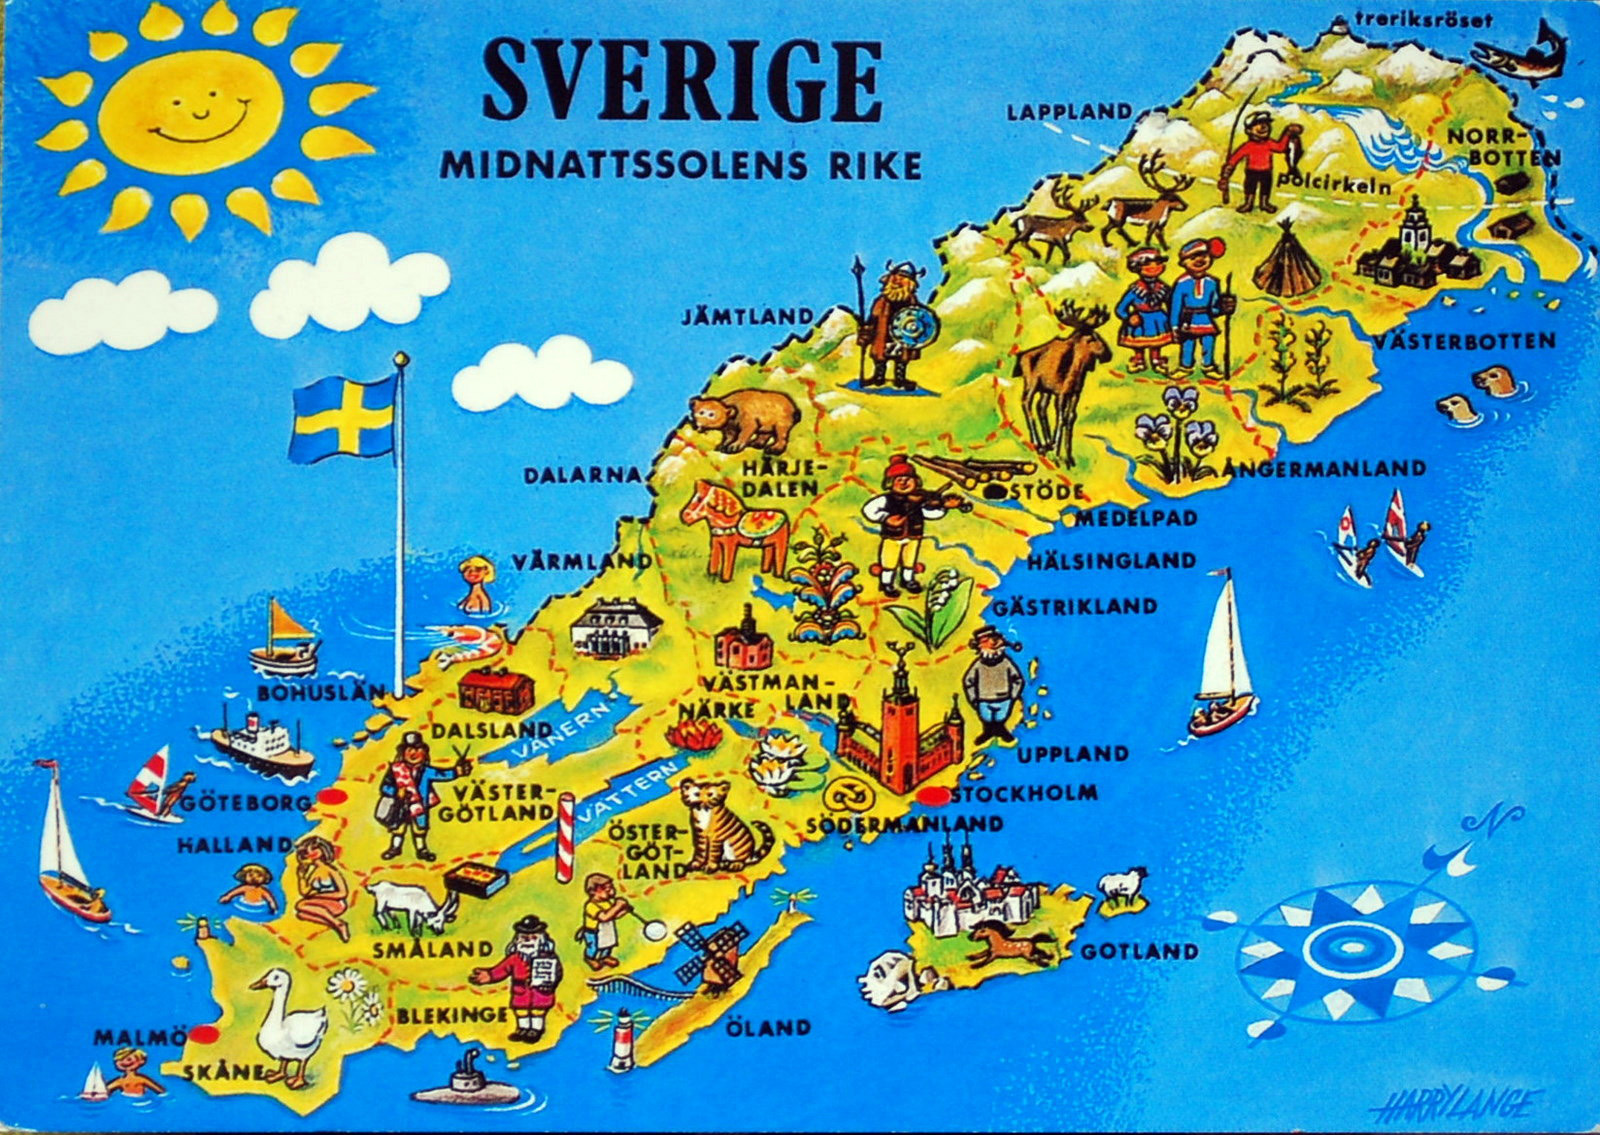 sverigekarta stockholm Sverige karta sverigekarta geografi resor ...